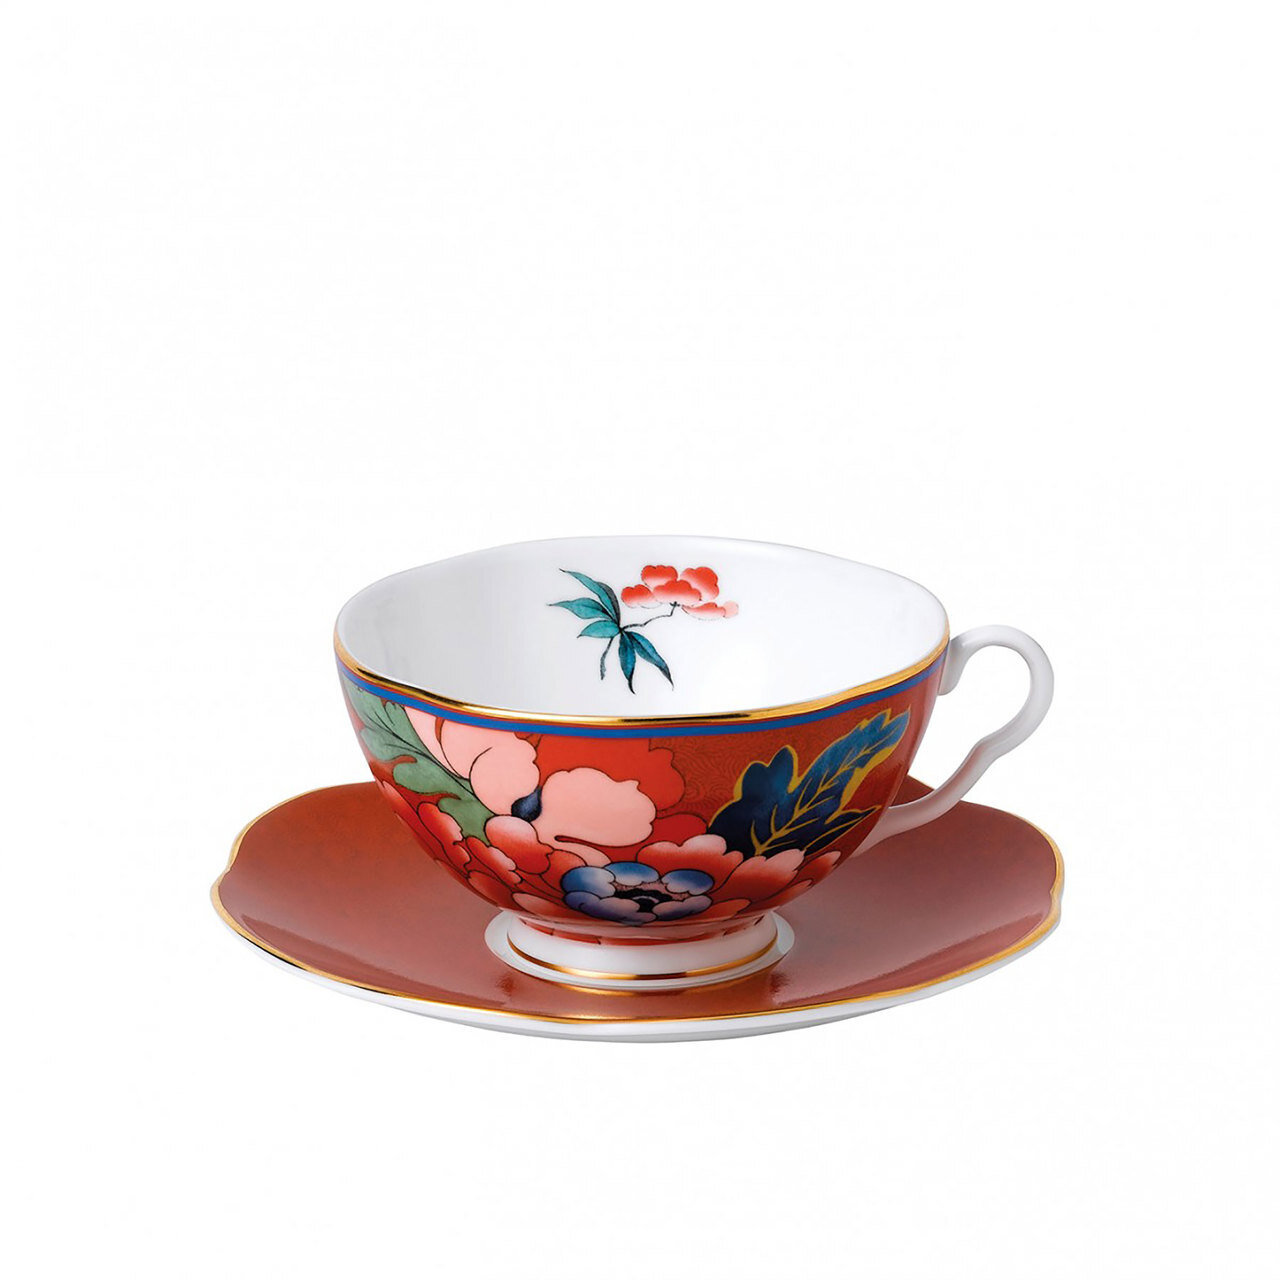 Wedgwood Paeonia Blush Teacup & saucer Set Red 40032094